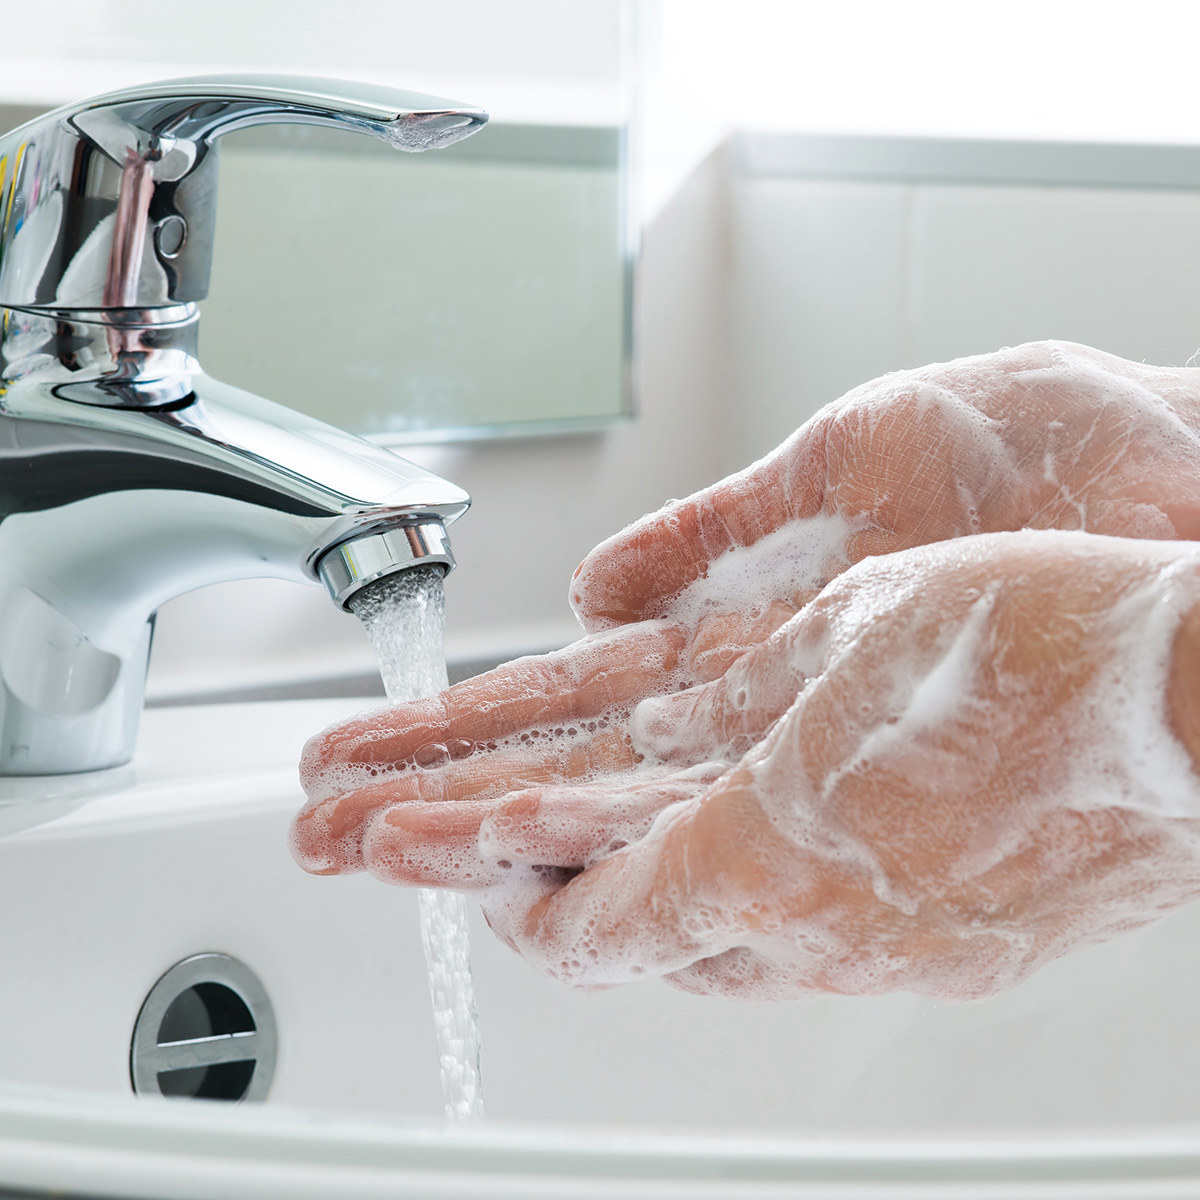 Una persona lavándose las manos enérgicamente en el lavabo